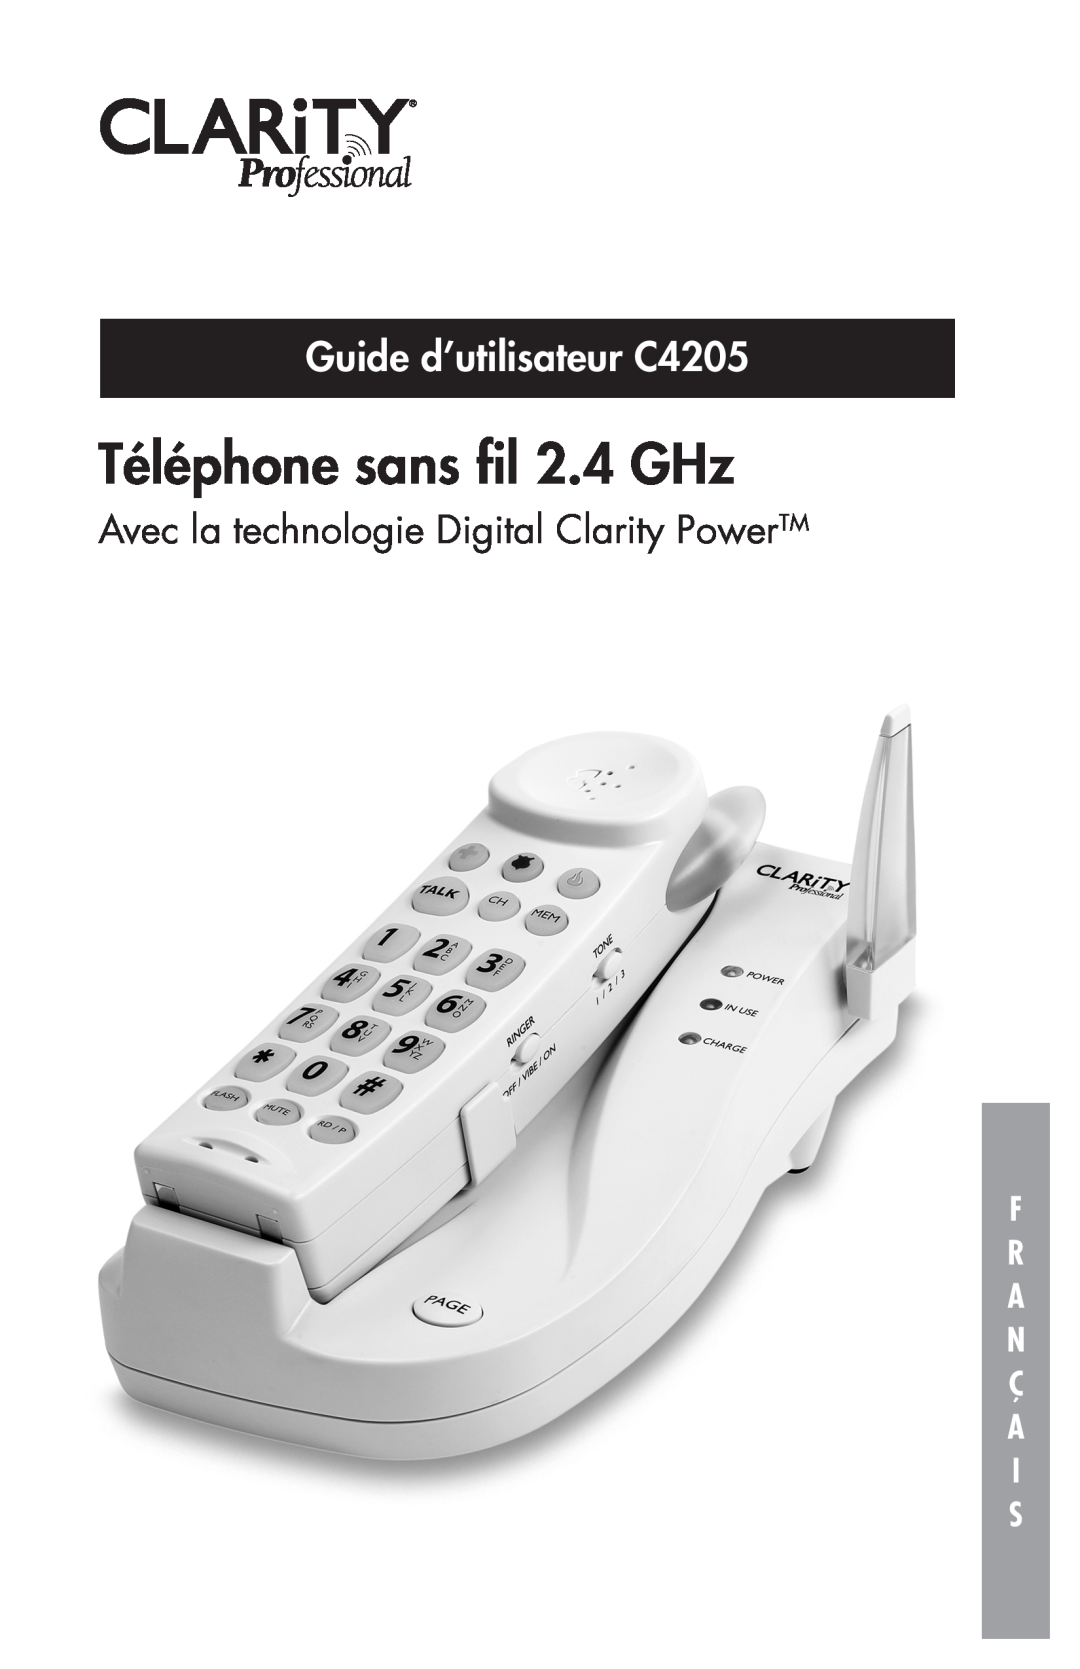 Clarity Téléphone sans ﬁl 2.4 GHz, Guide d’utilisateur C4205, Avec la technologie Digital Clarity PowerTM, Ç A I S 